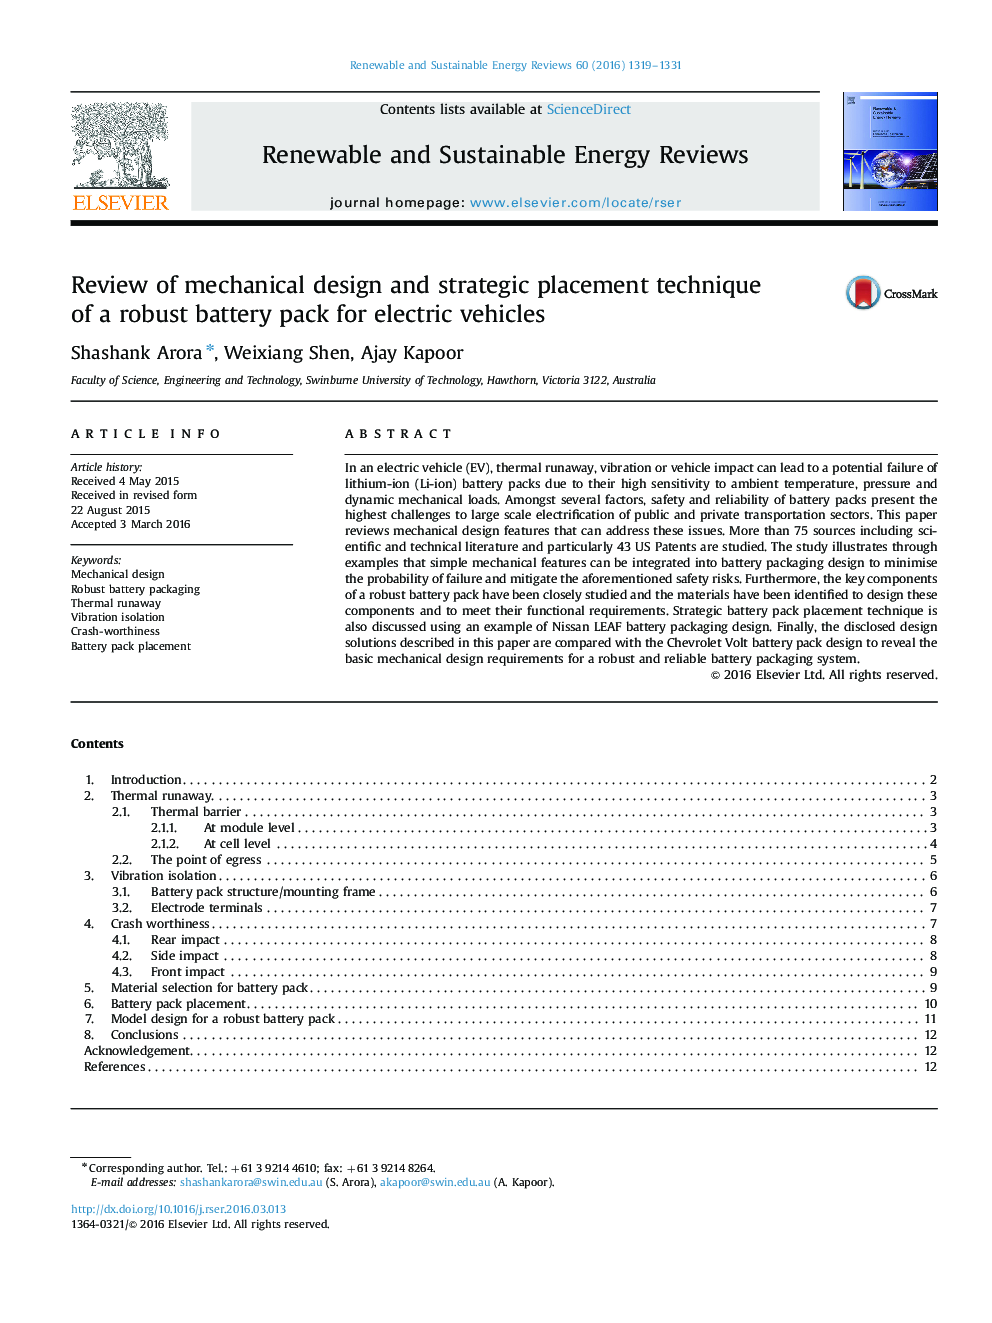 بررسی طراحی مکانیکی و روش استقرار استراتژی یک بسته باتری قوی برای وسایل نقلیه الکتریکی 